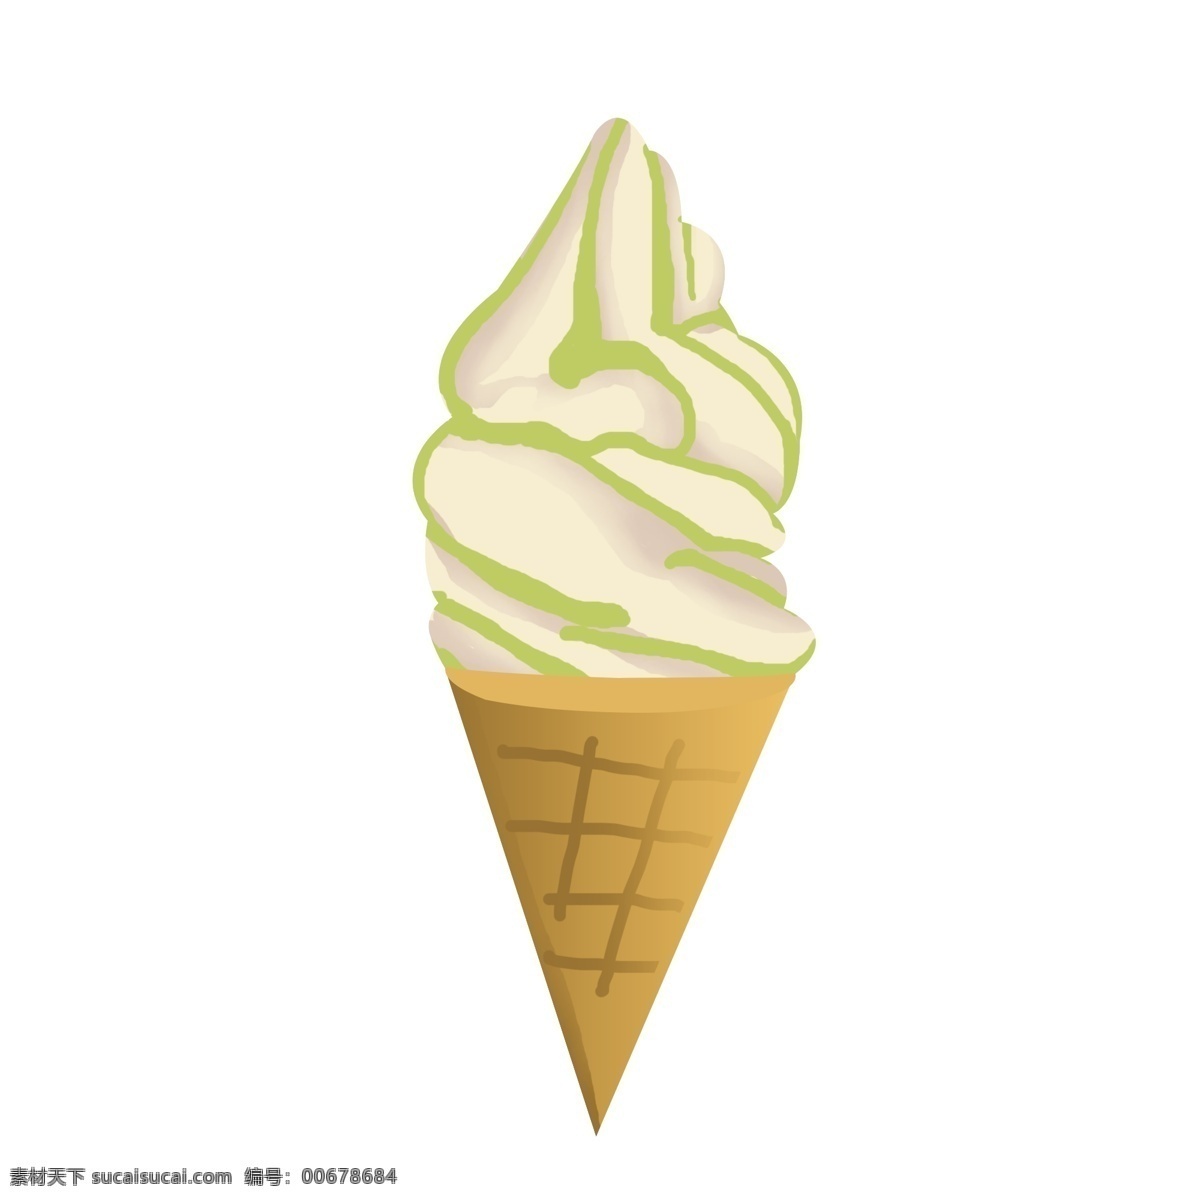 手绘 食物 冰淇凌 商用 冰淇淋 食物素材 冰淇淋素材